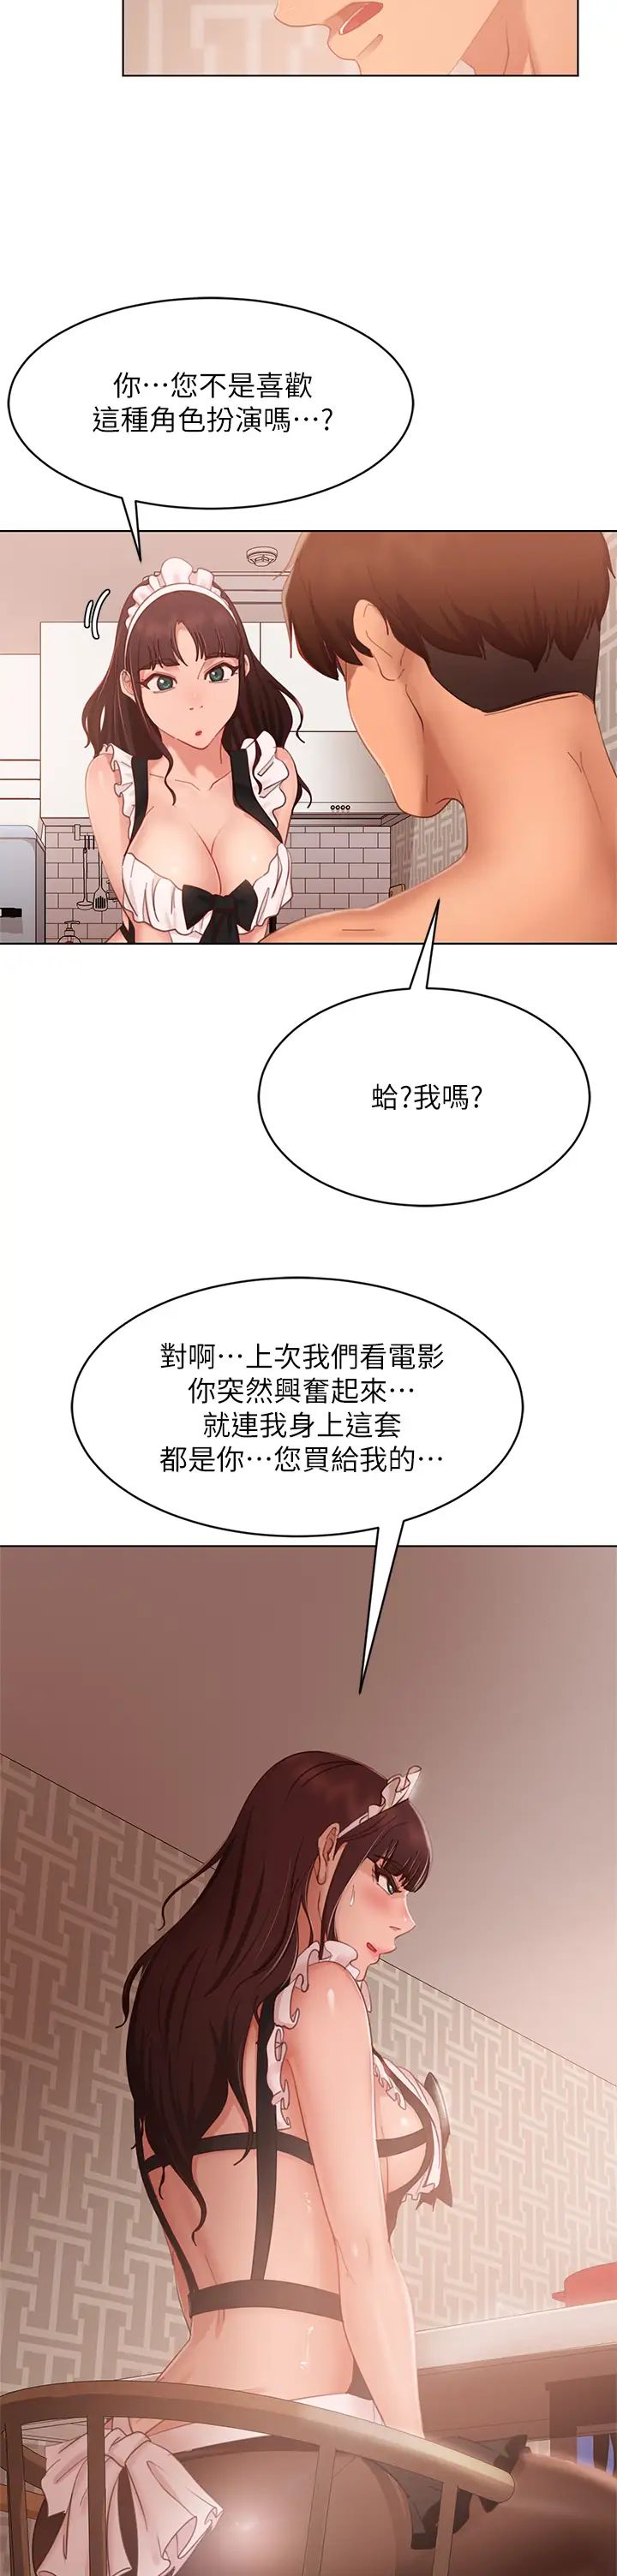 韩国污漫画 不良女房客 第62话女仆的本分就是清东西 13